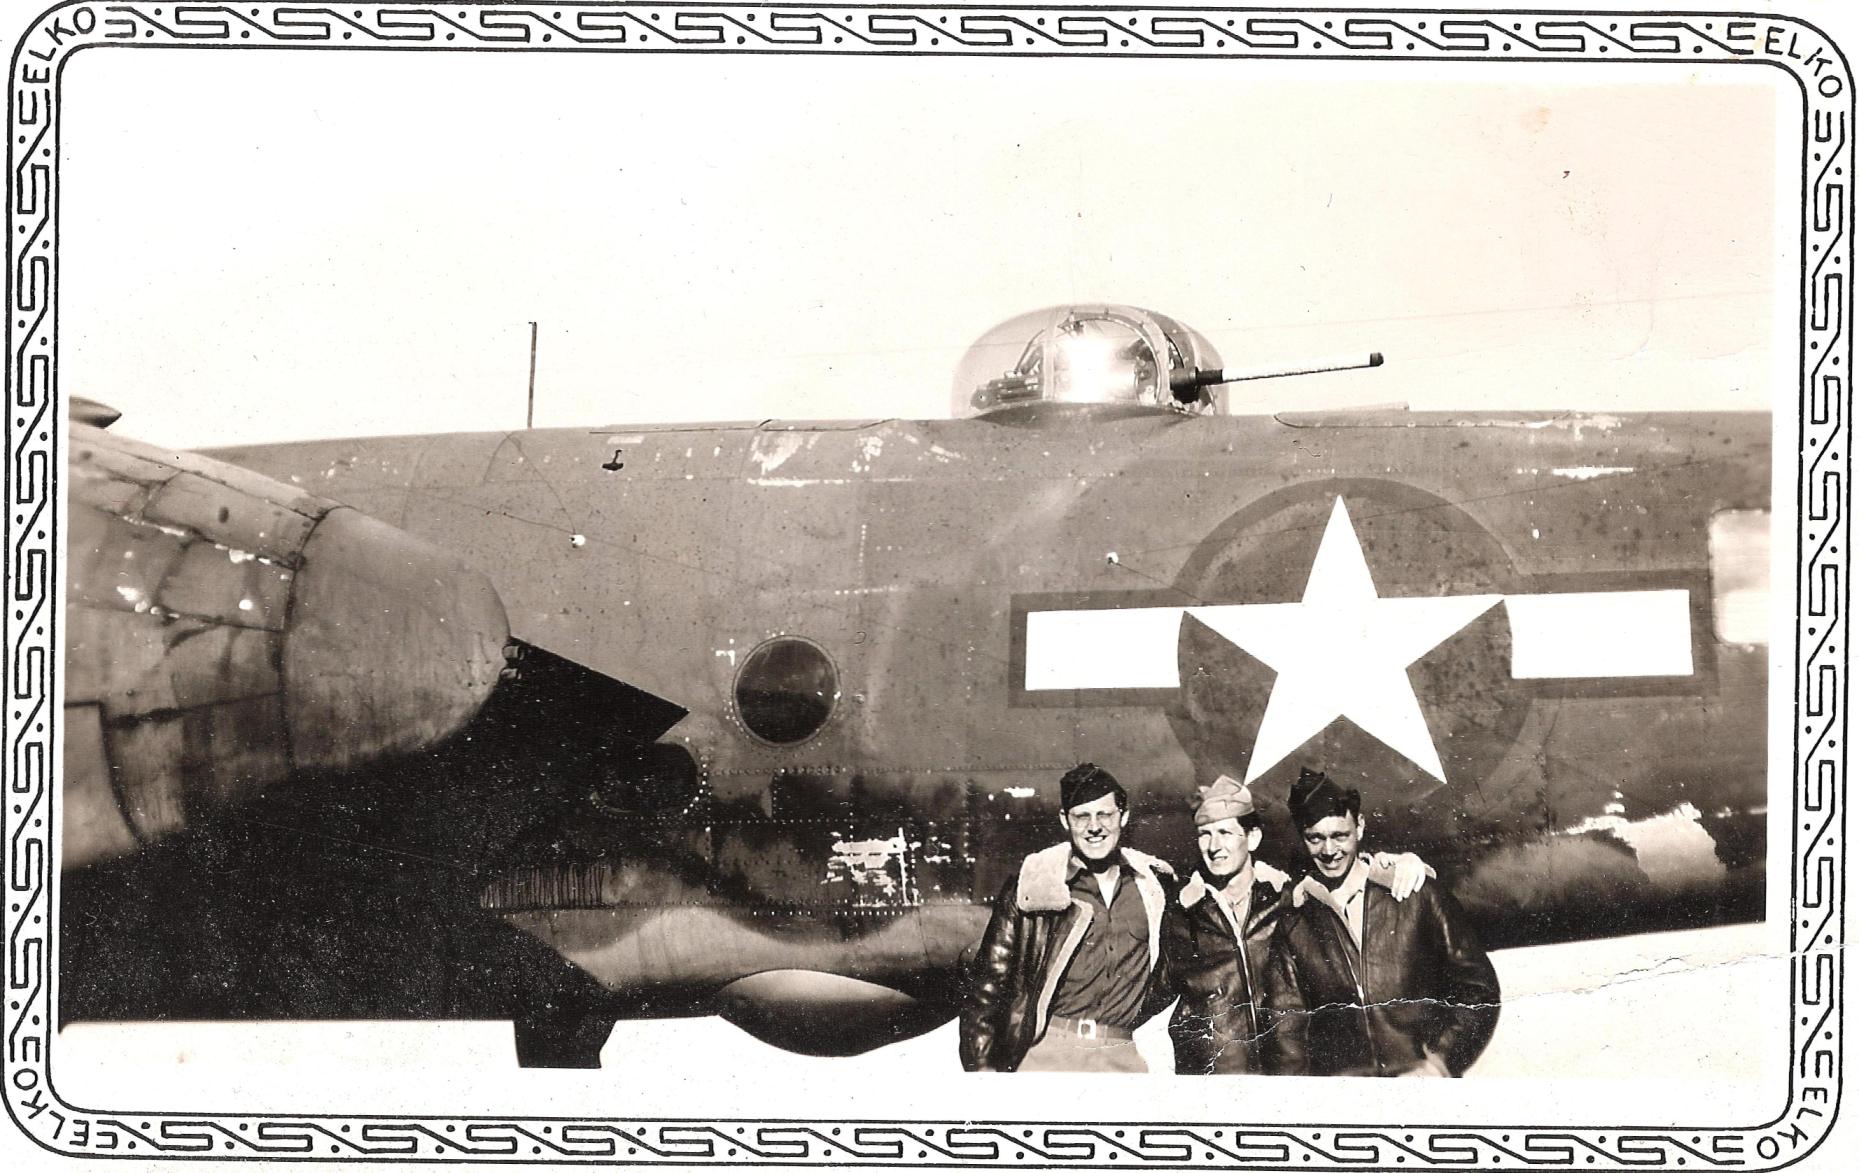 wrf 1944_b-25